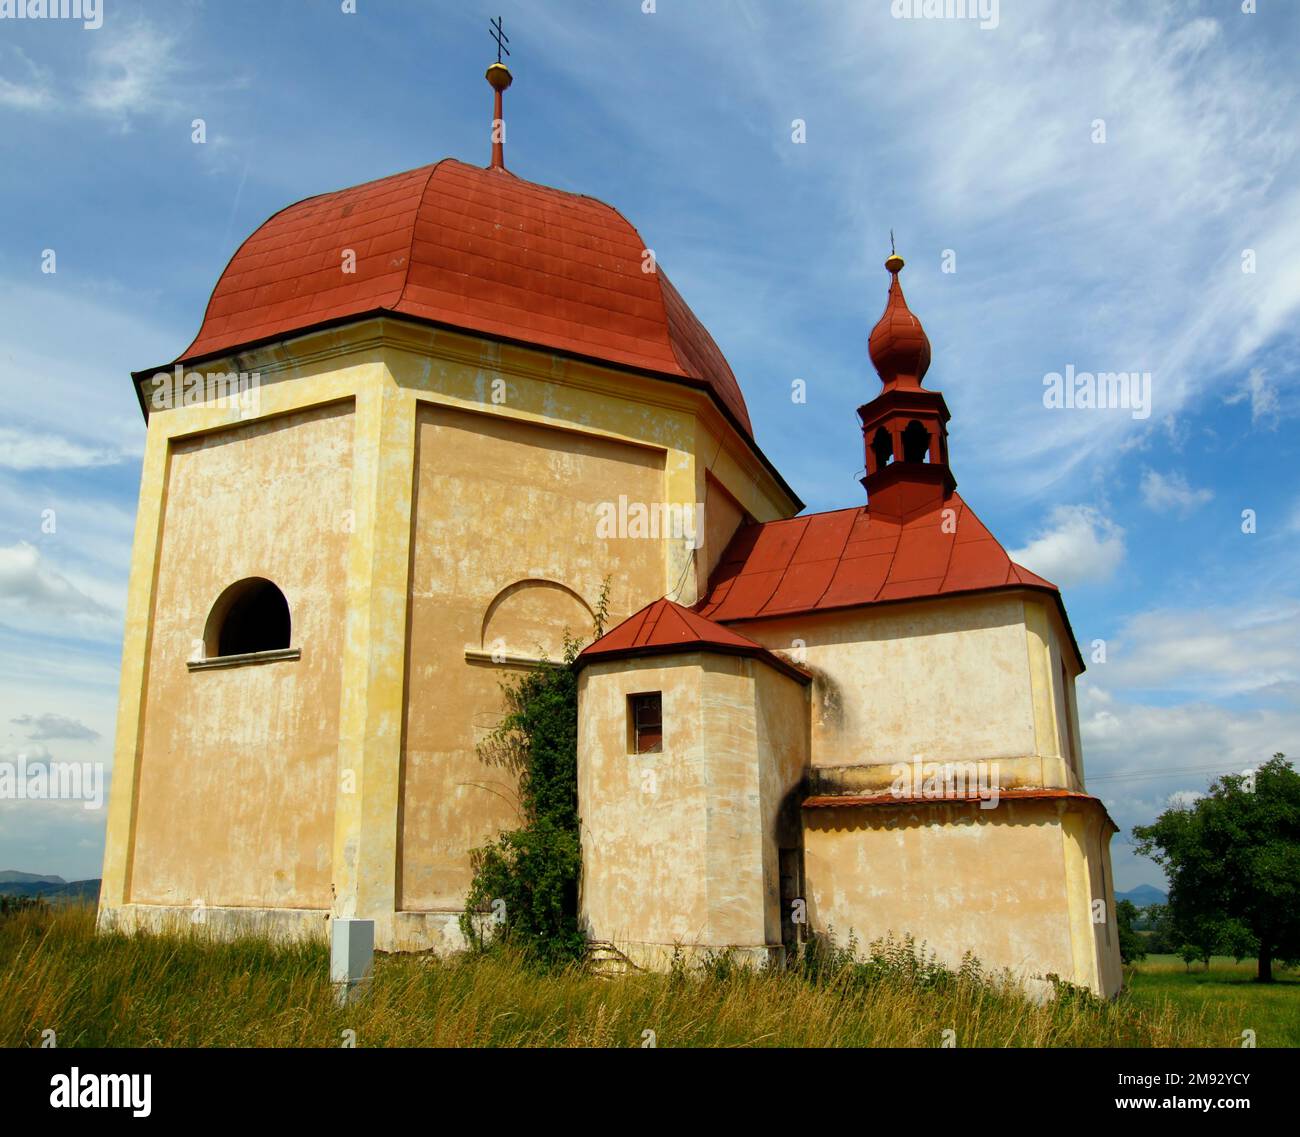 Bild der barocken Besuchskapelle in der Nähe des Dorfes Slavetin, Tschechische republik Stockfoto